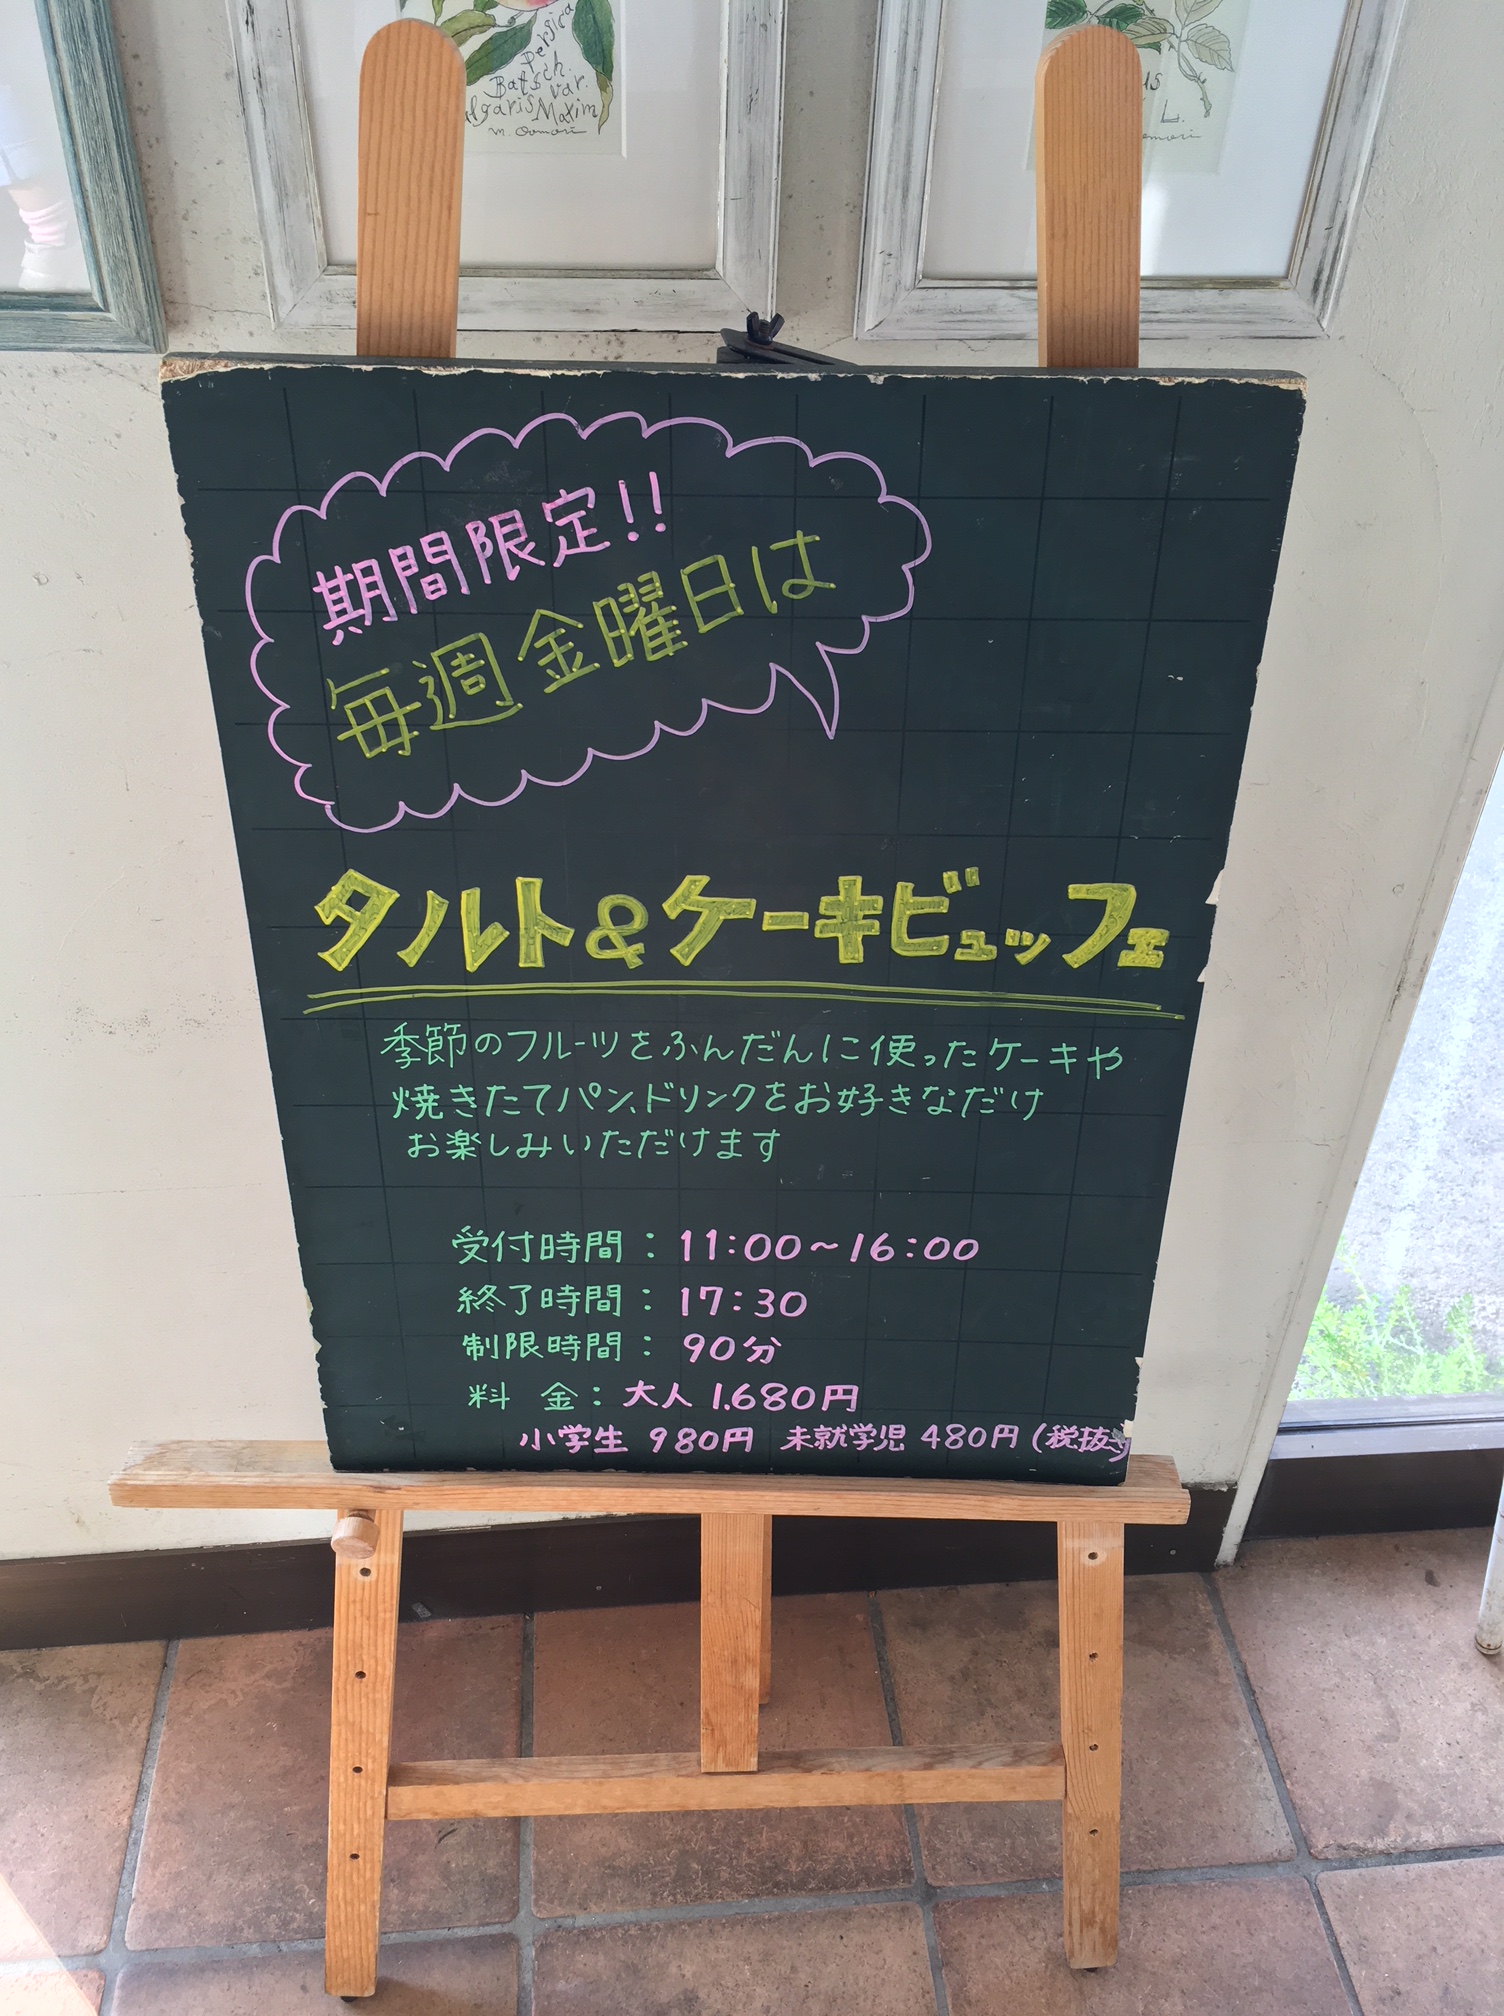 マカロニ市場 小田原店 でタルト ケーキビュフェ 金曜限定 に行って来た